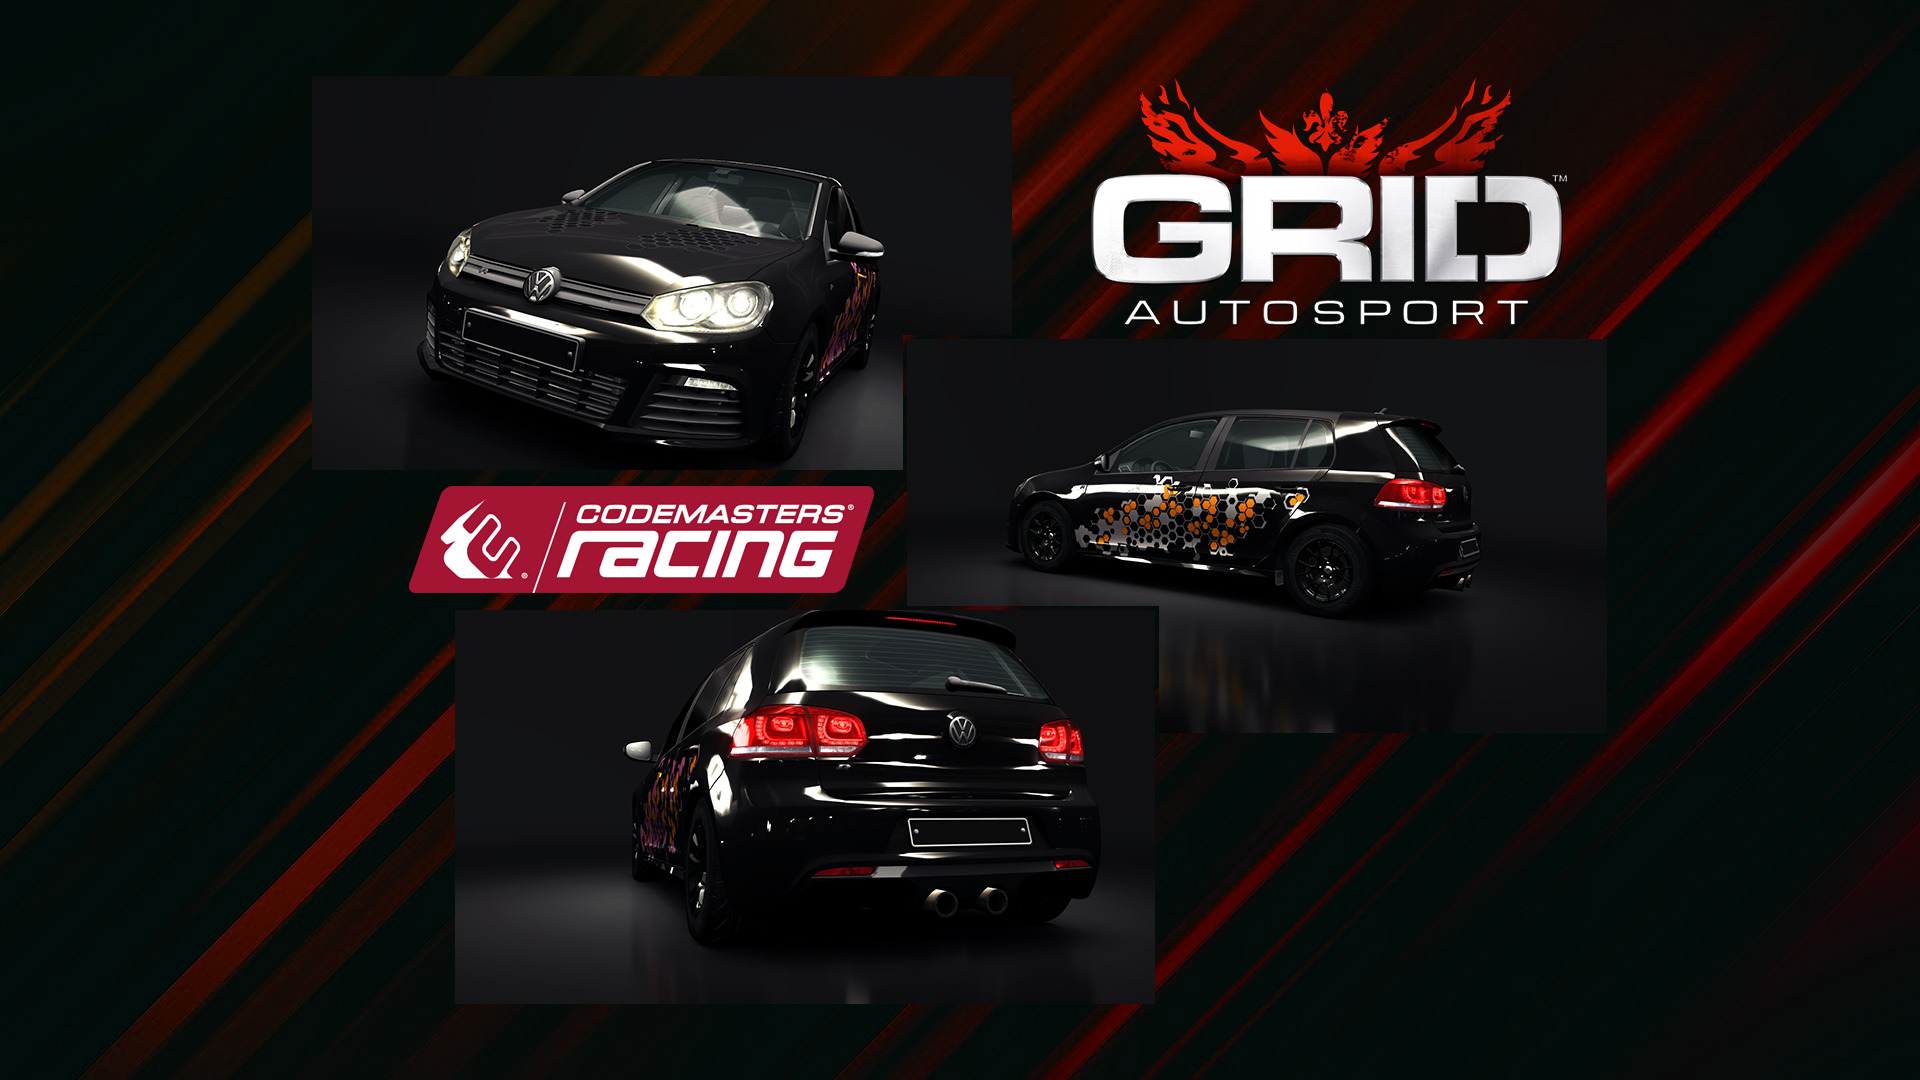 2440x1440 grid autosport backgrounds